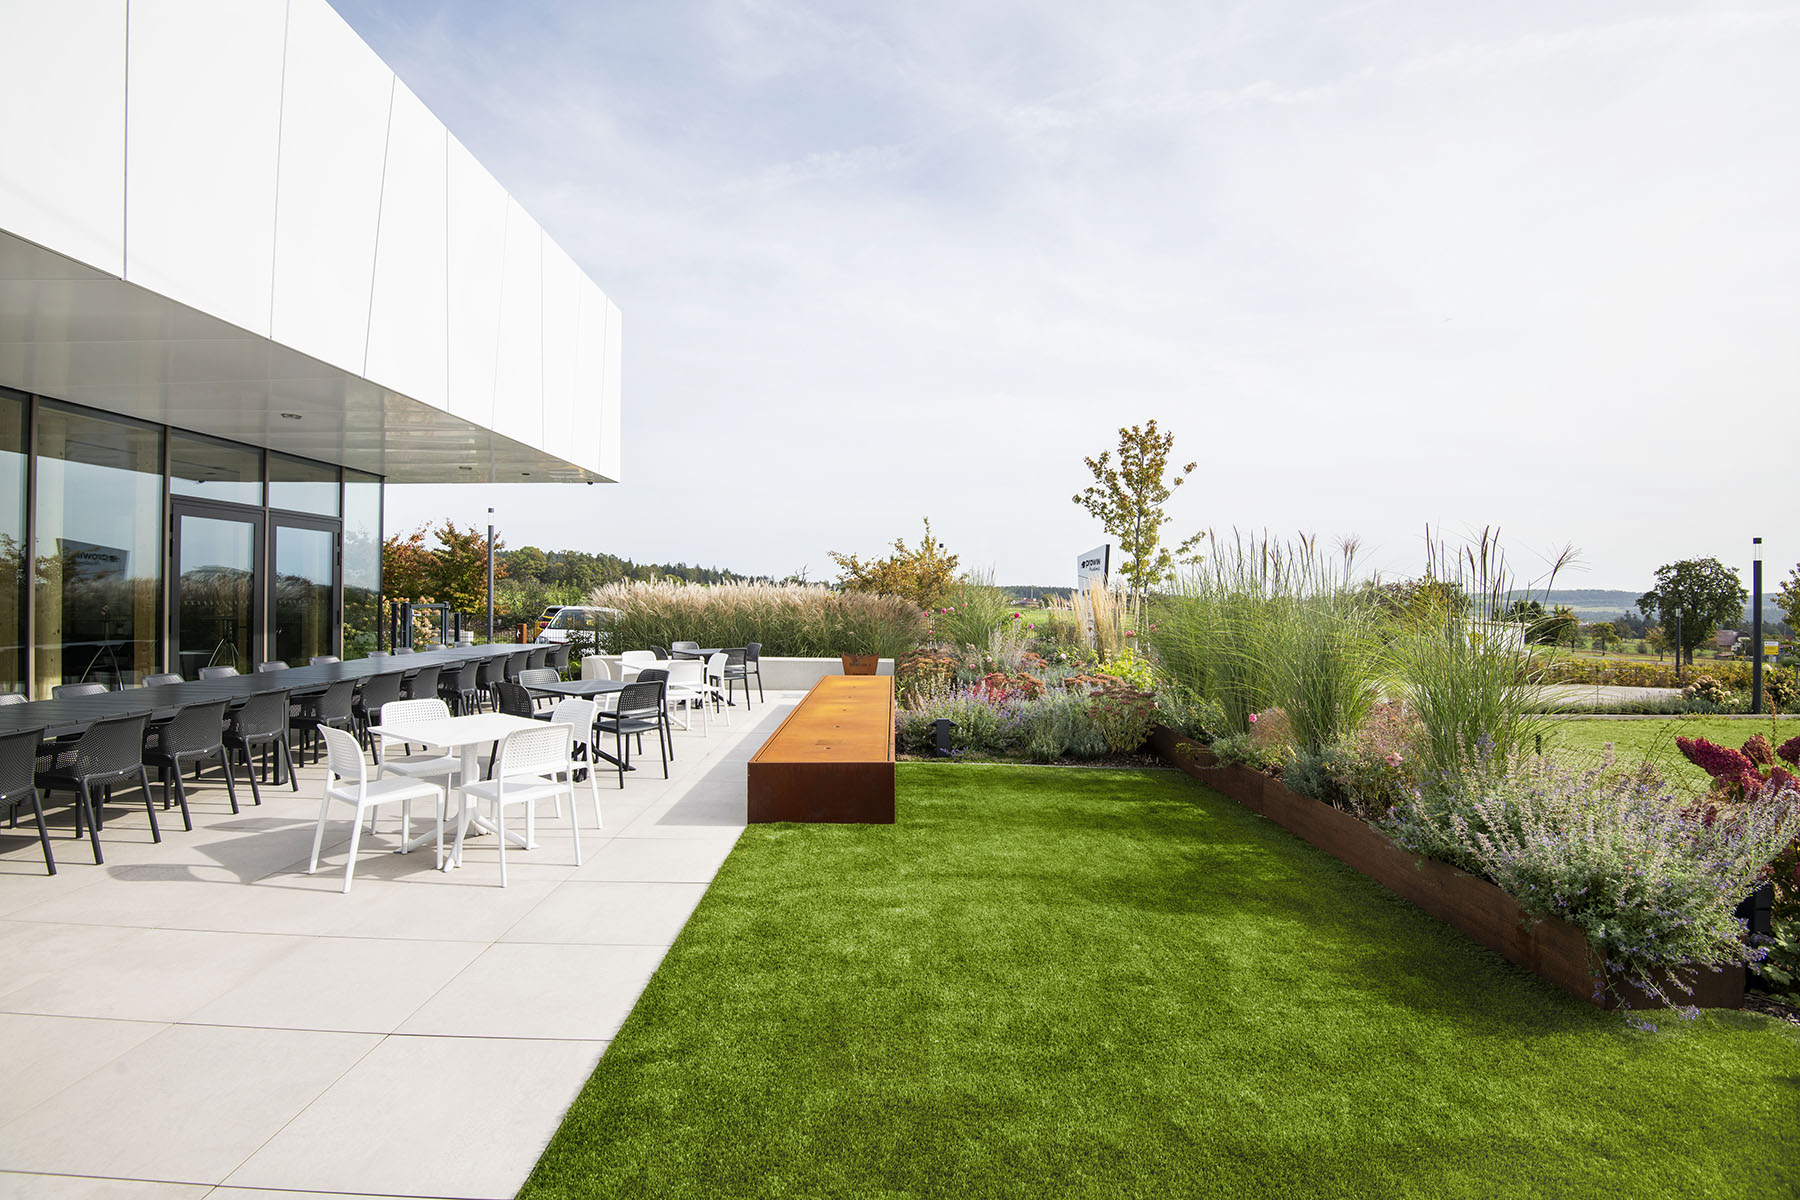 Bestuhlte Terrasse mit grüner Wiese, braunem Wasserspiel und hochstehenden Blühpflanzen